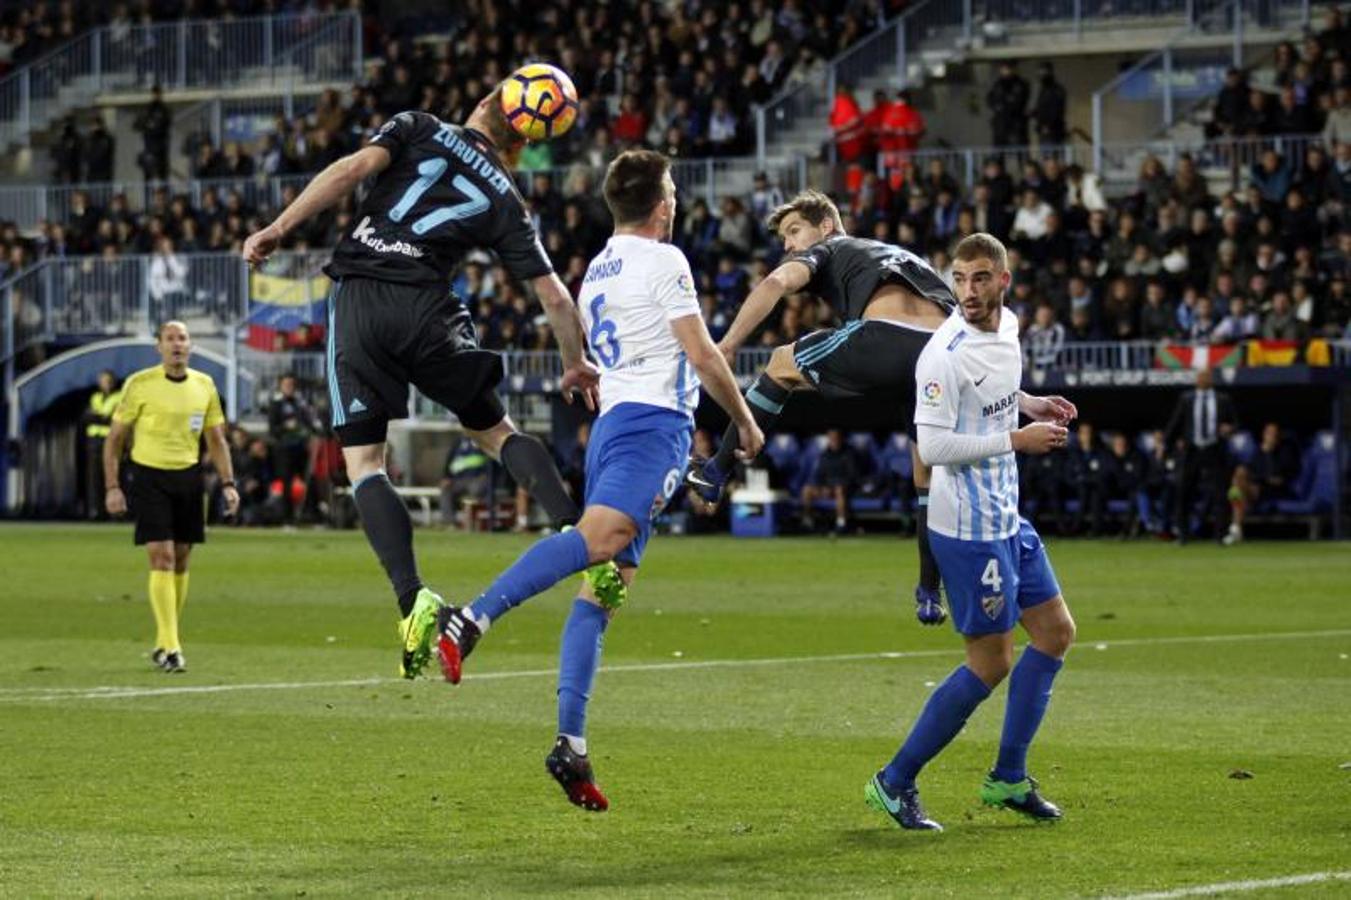 La Real Sociedad se coloca quinta en la Liga tras vencer en Málaga